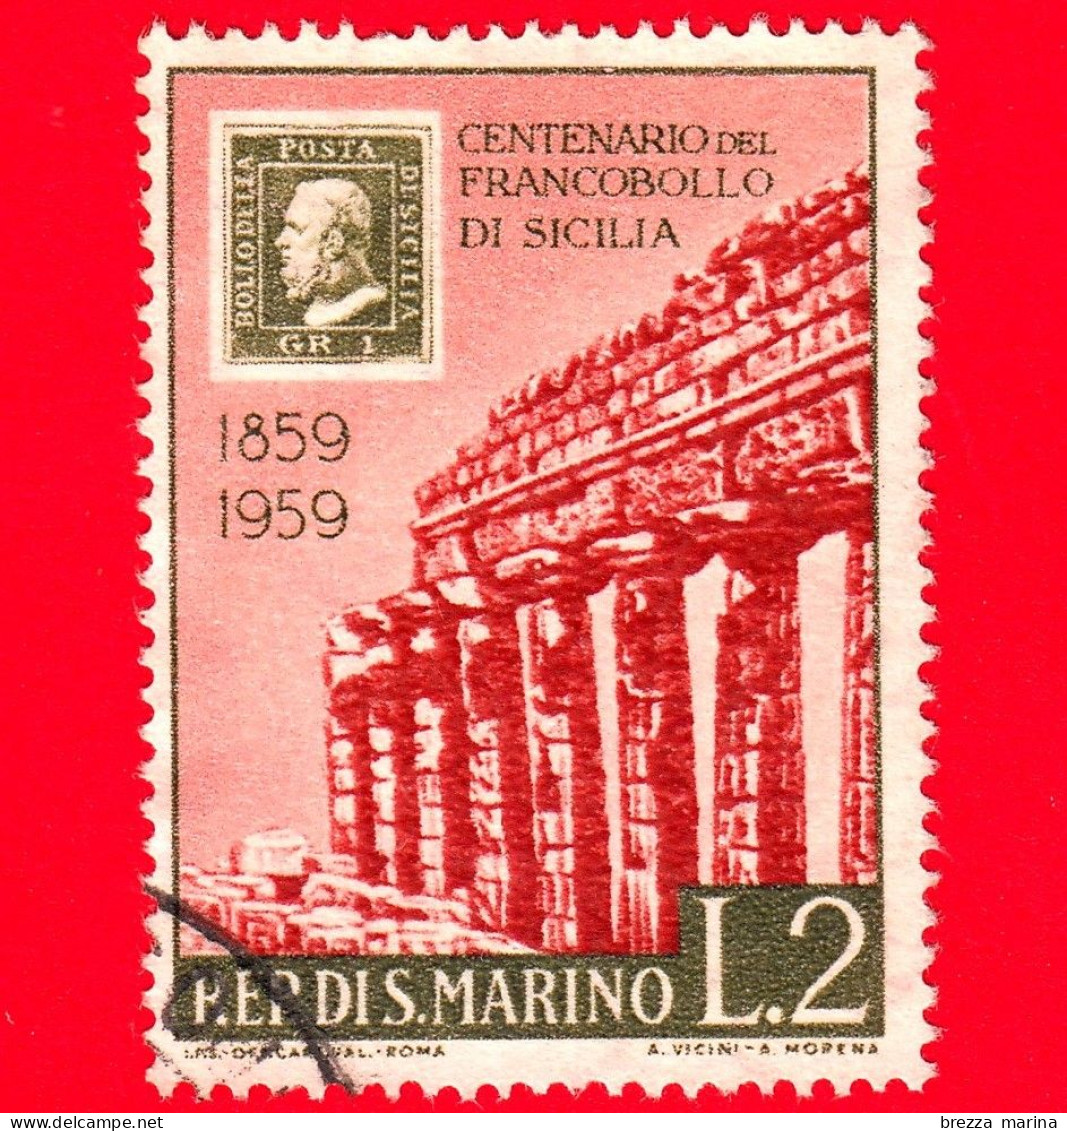 SAN MARINO - Usato - 1959 - Centenario Dei Francobolli Di Sicilia - Tempio Di Selinunte - 2 L. - Gebraucht